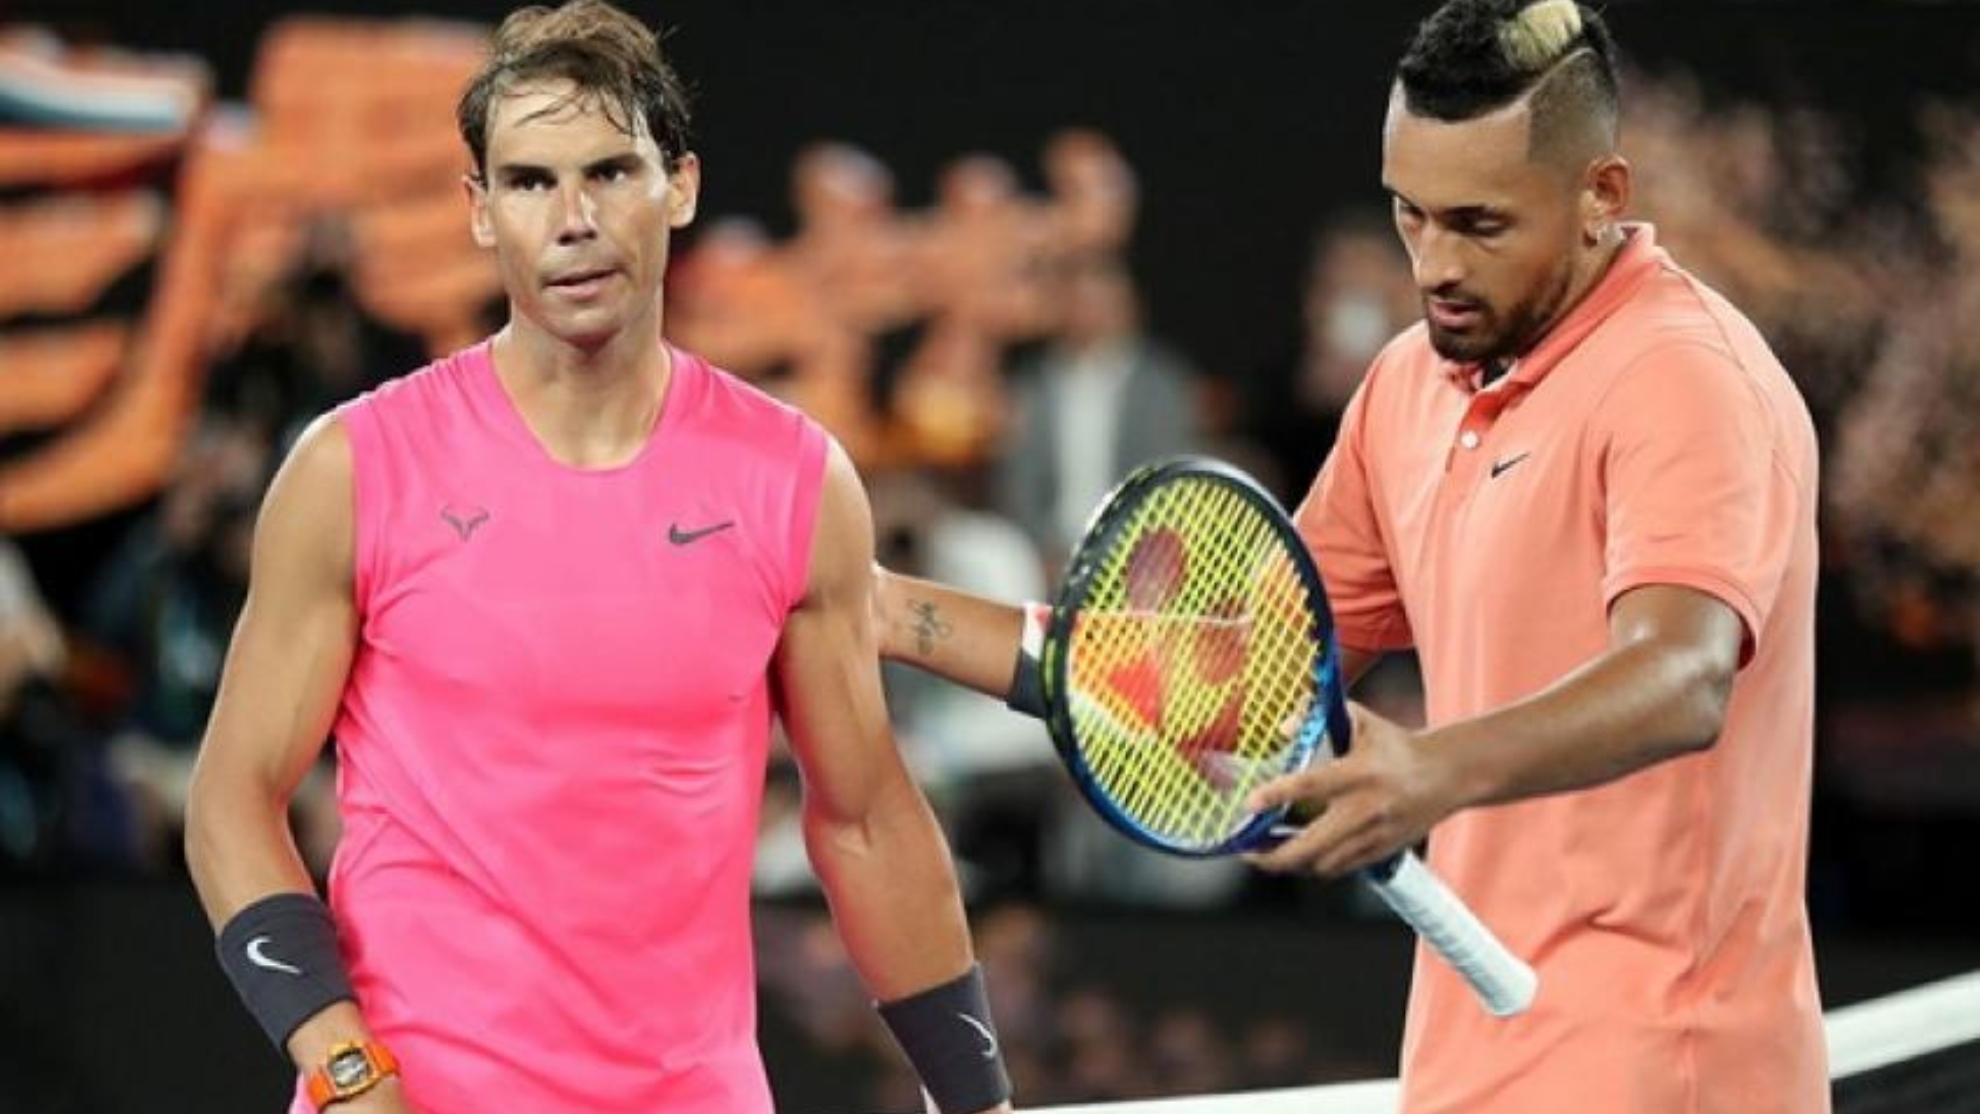 El mensaje de ánimo de Kyrgios a Nadal tras conocer su retirada de Wimbledon